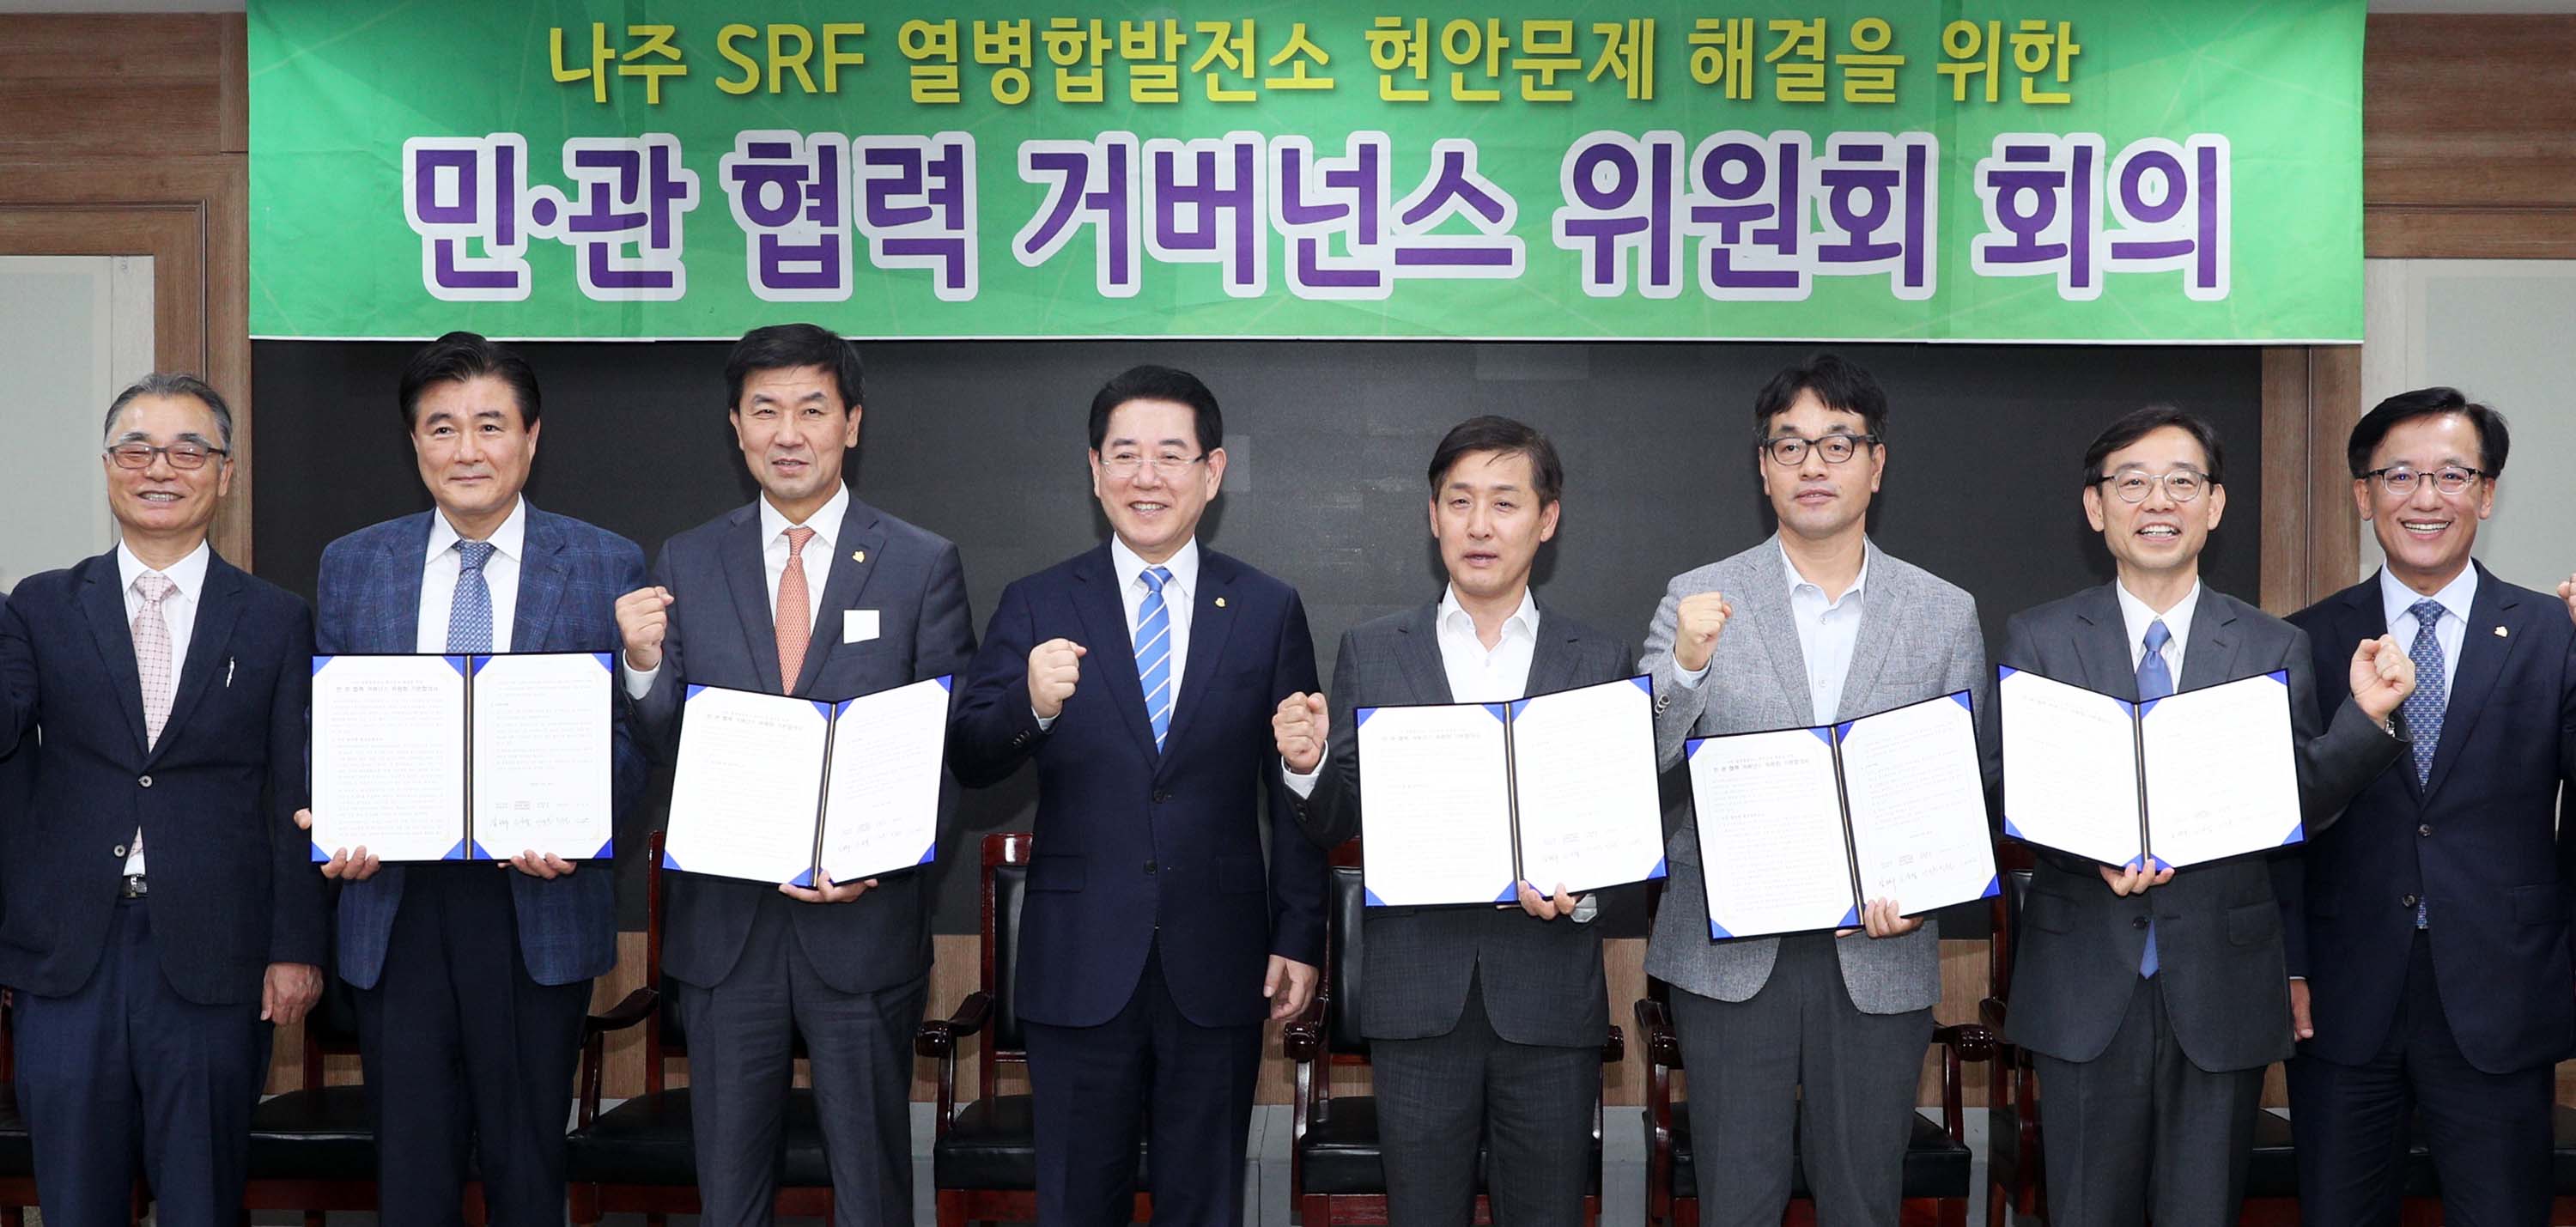 나주 SRF 열병합발전소 현안문제 해결을 위한 민ㆍ관 협력 거버런스 위원회 회의2